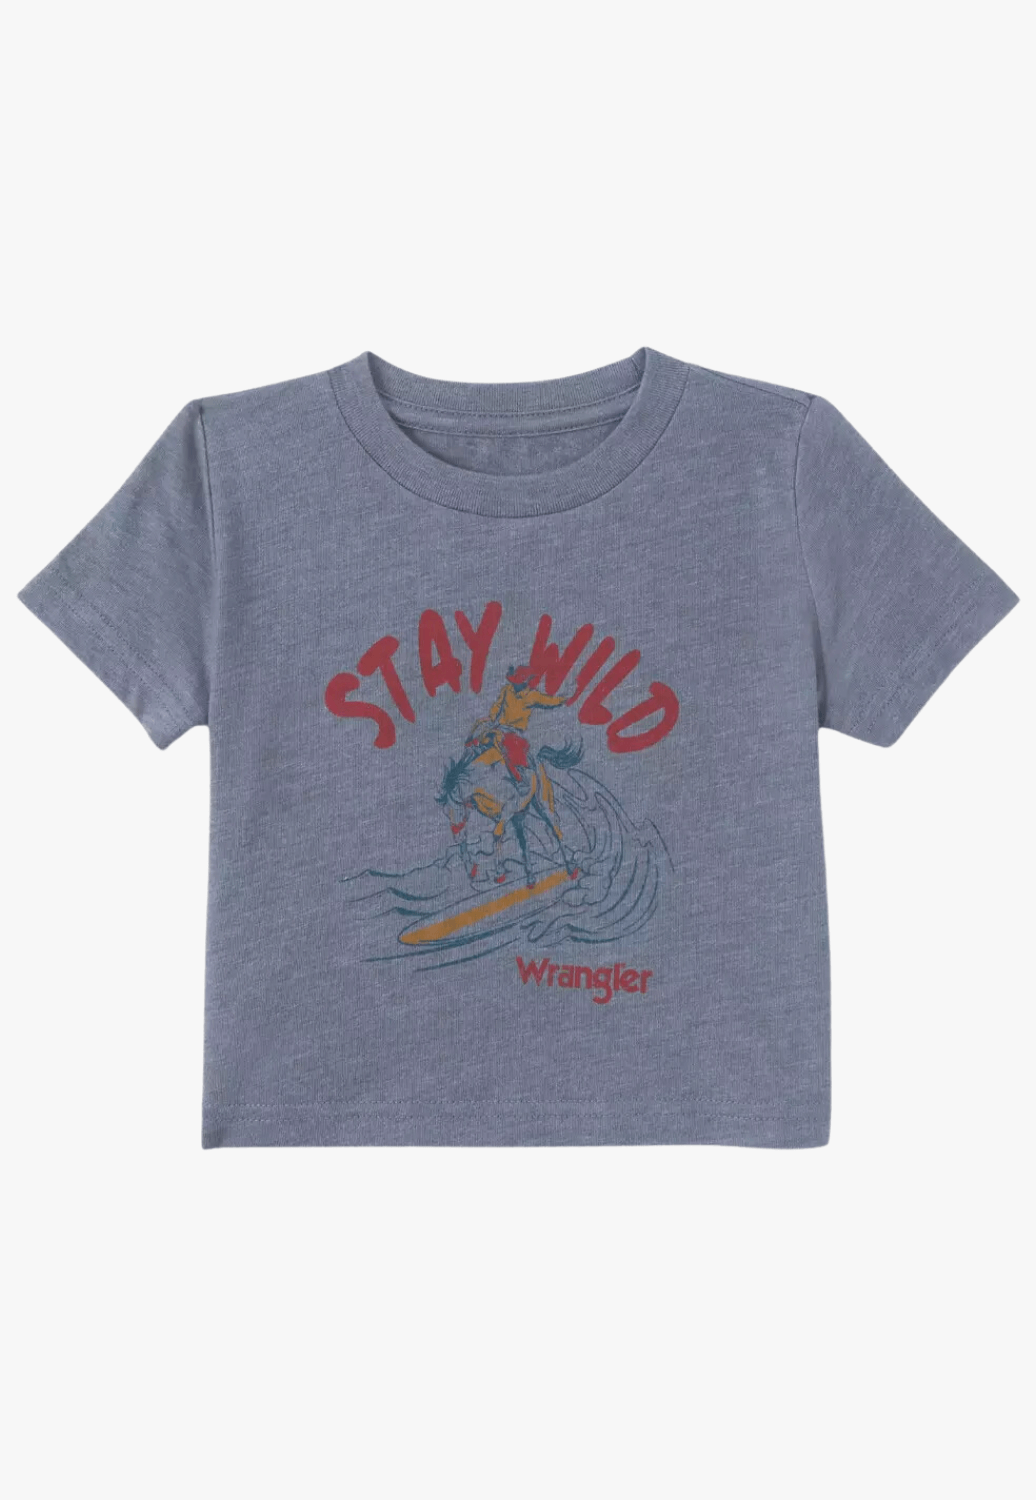 Wrangler Unisex Kids Graphic T-Shirt